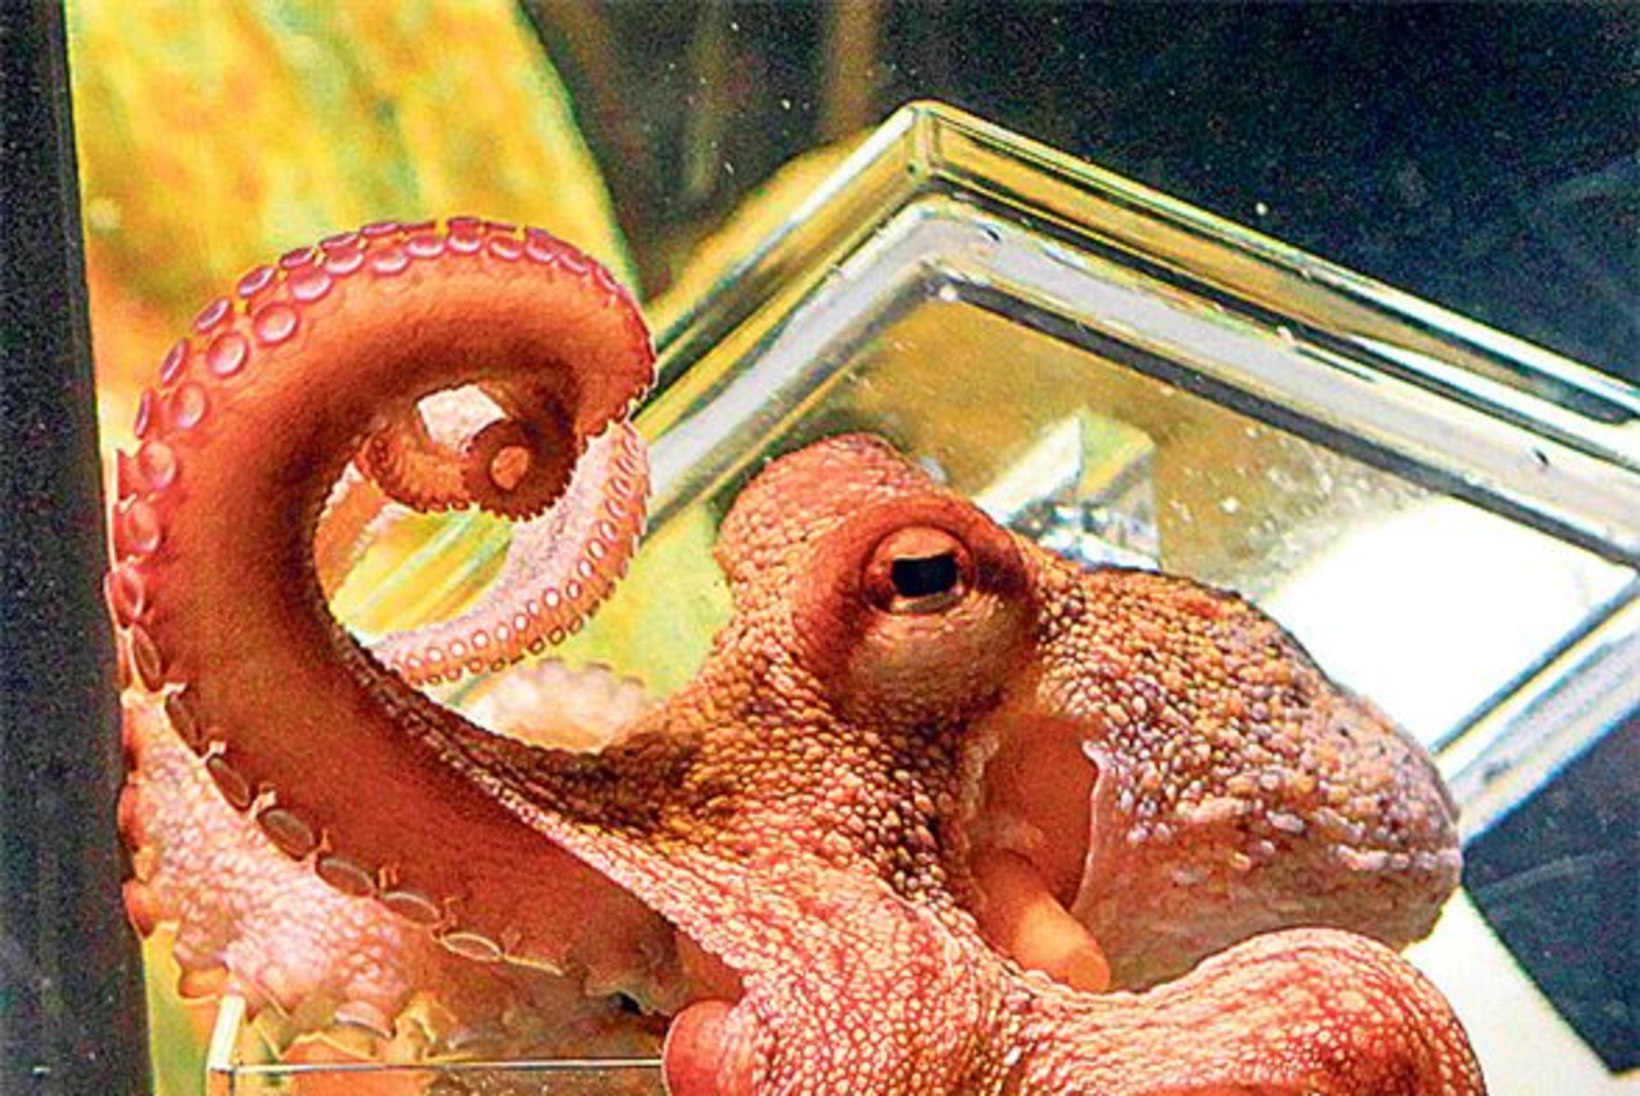 Kaheksajalg Paul
